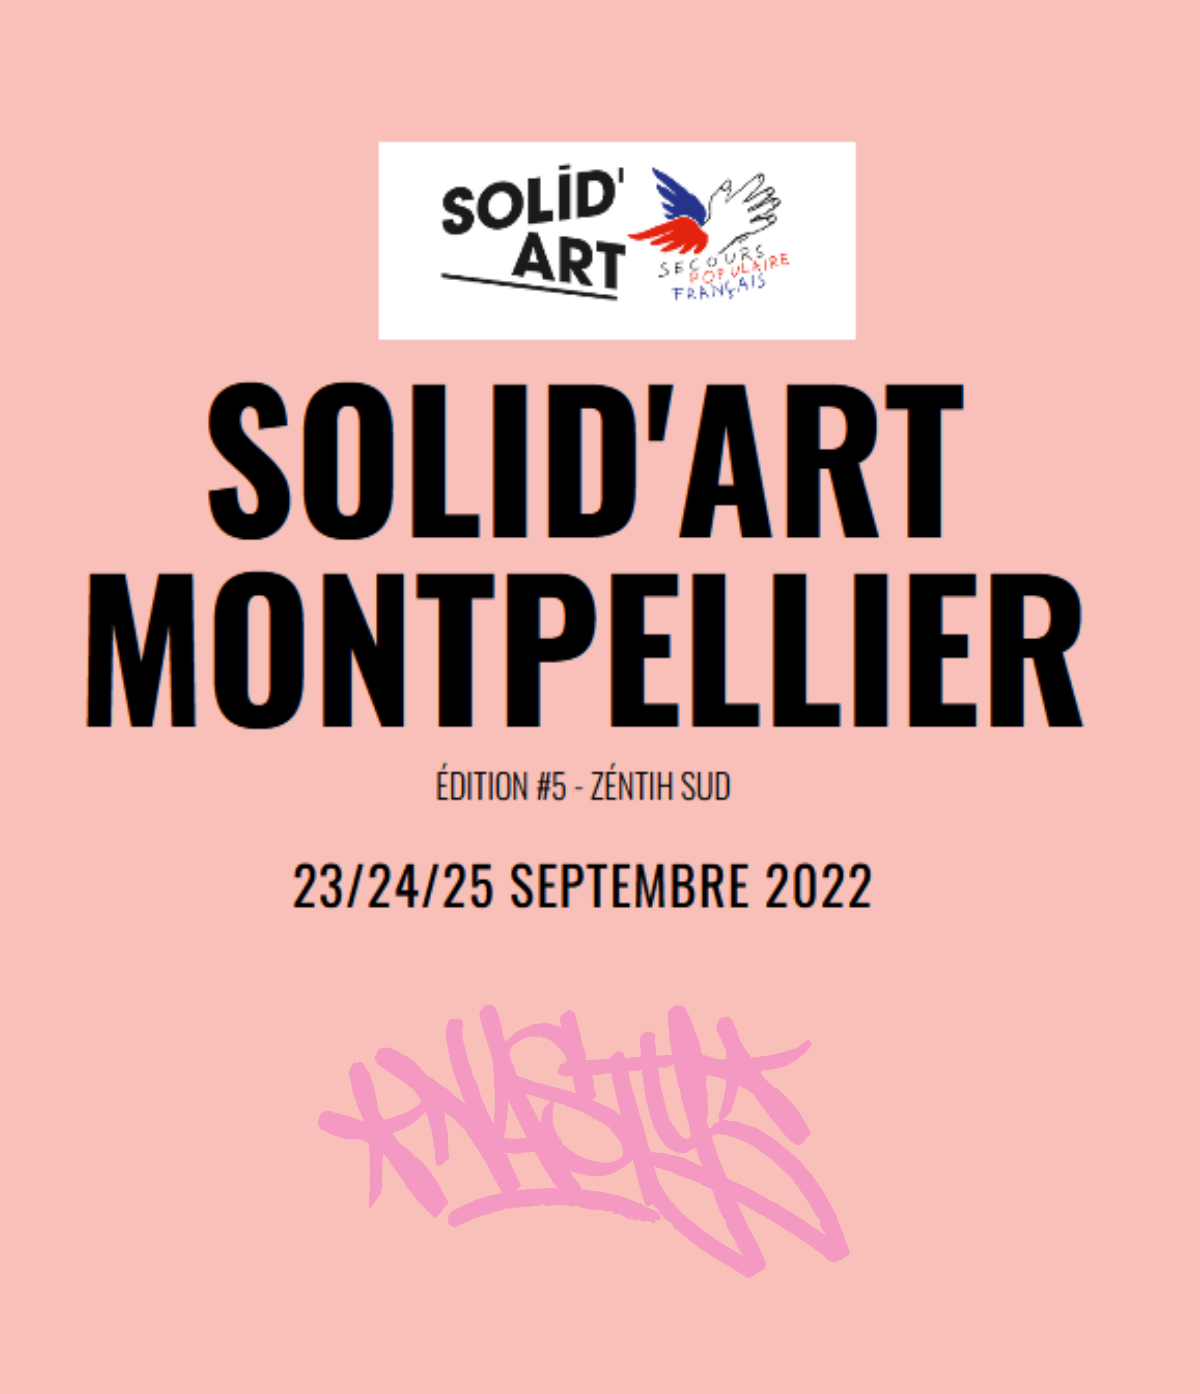 SOLID'ART MONTPELLIER -Salon d'art contemporain